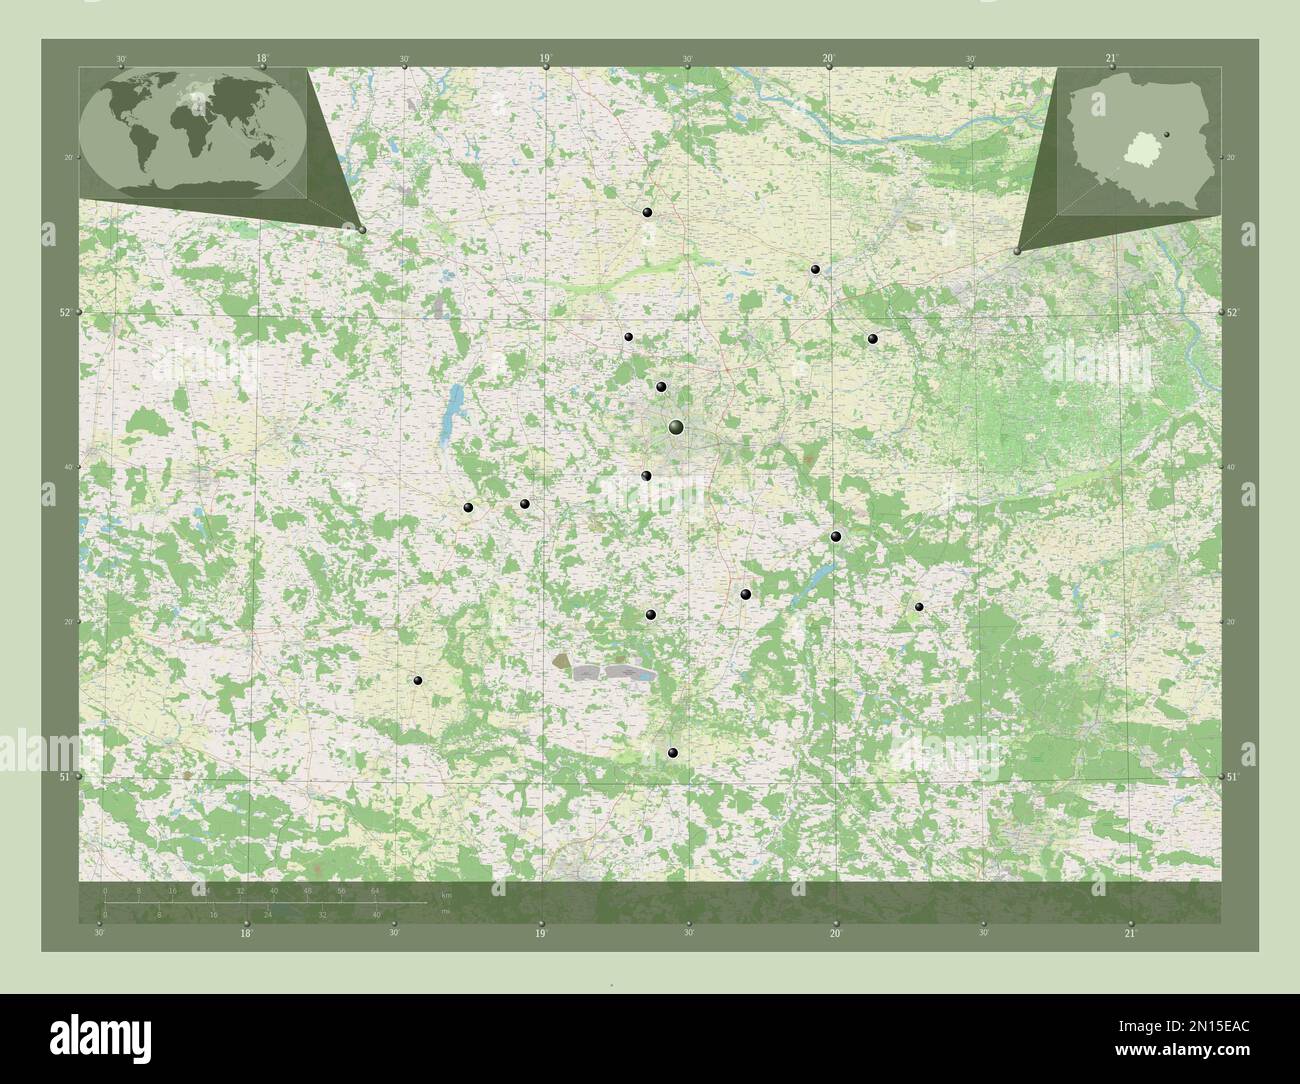 Lodzkie, voïvodeship|province de Pologne. Ouvrez la carte des rues. Lieux des principales villes de la région. Cartes d'emplacement auxiliaire d'angle Banque D'Images